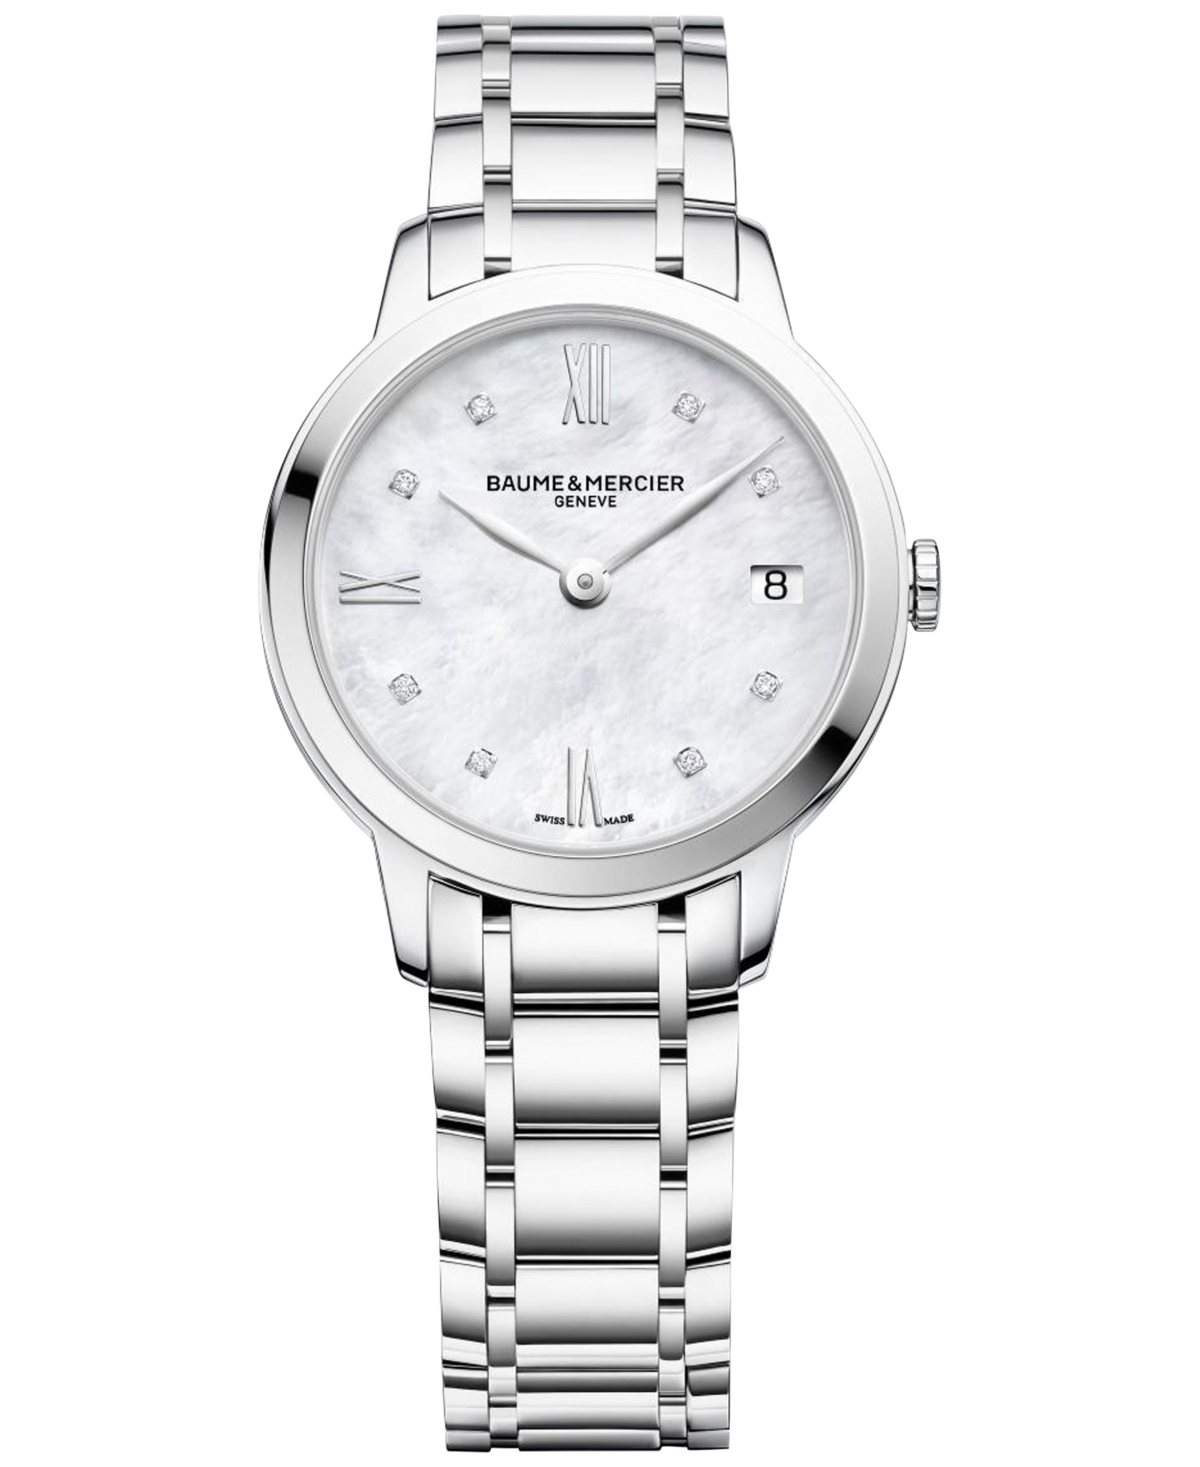 Baume & Mercier Women's Swiss Classima Diamond-accent Stainless Steel Bracelet Watch 31mm M0a10326 In Silver